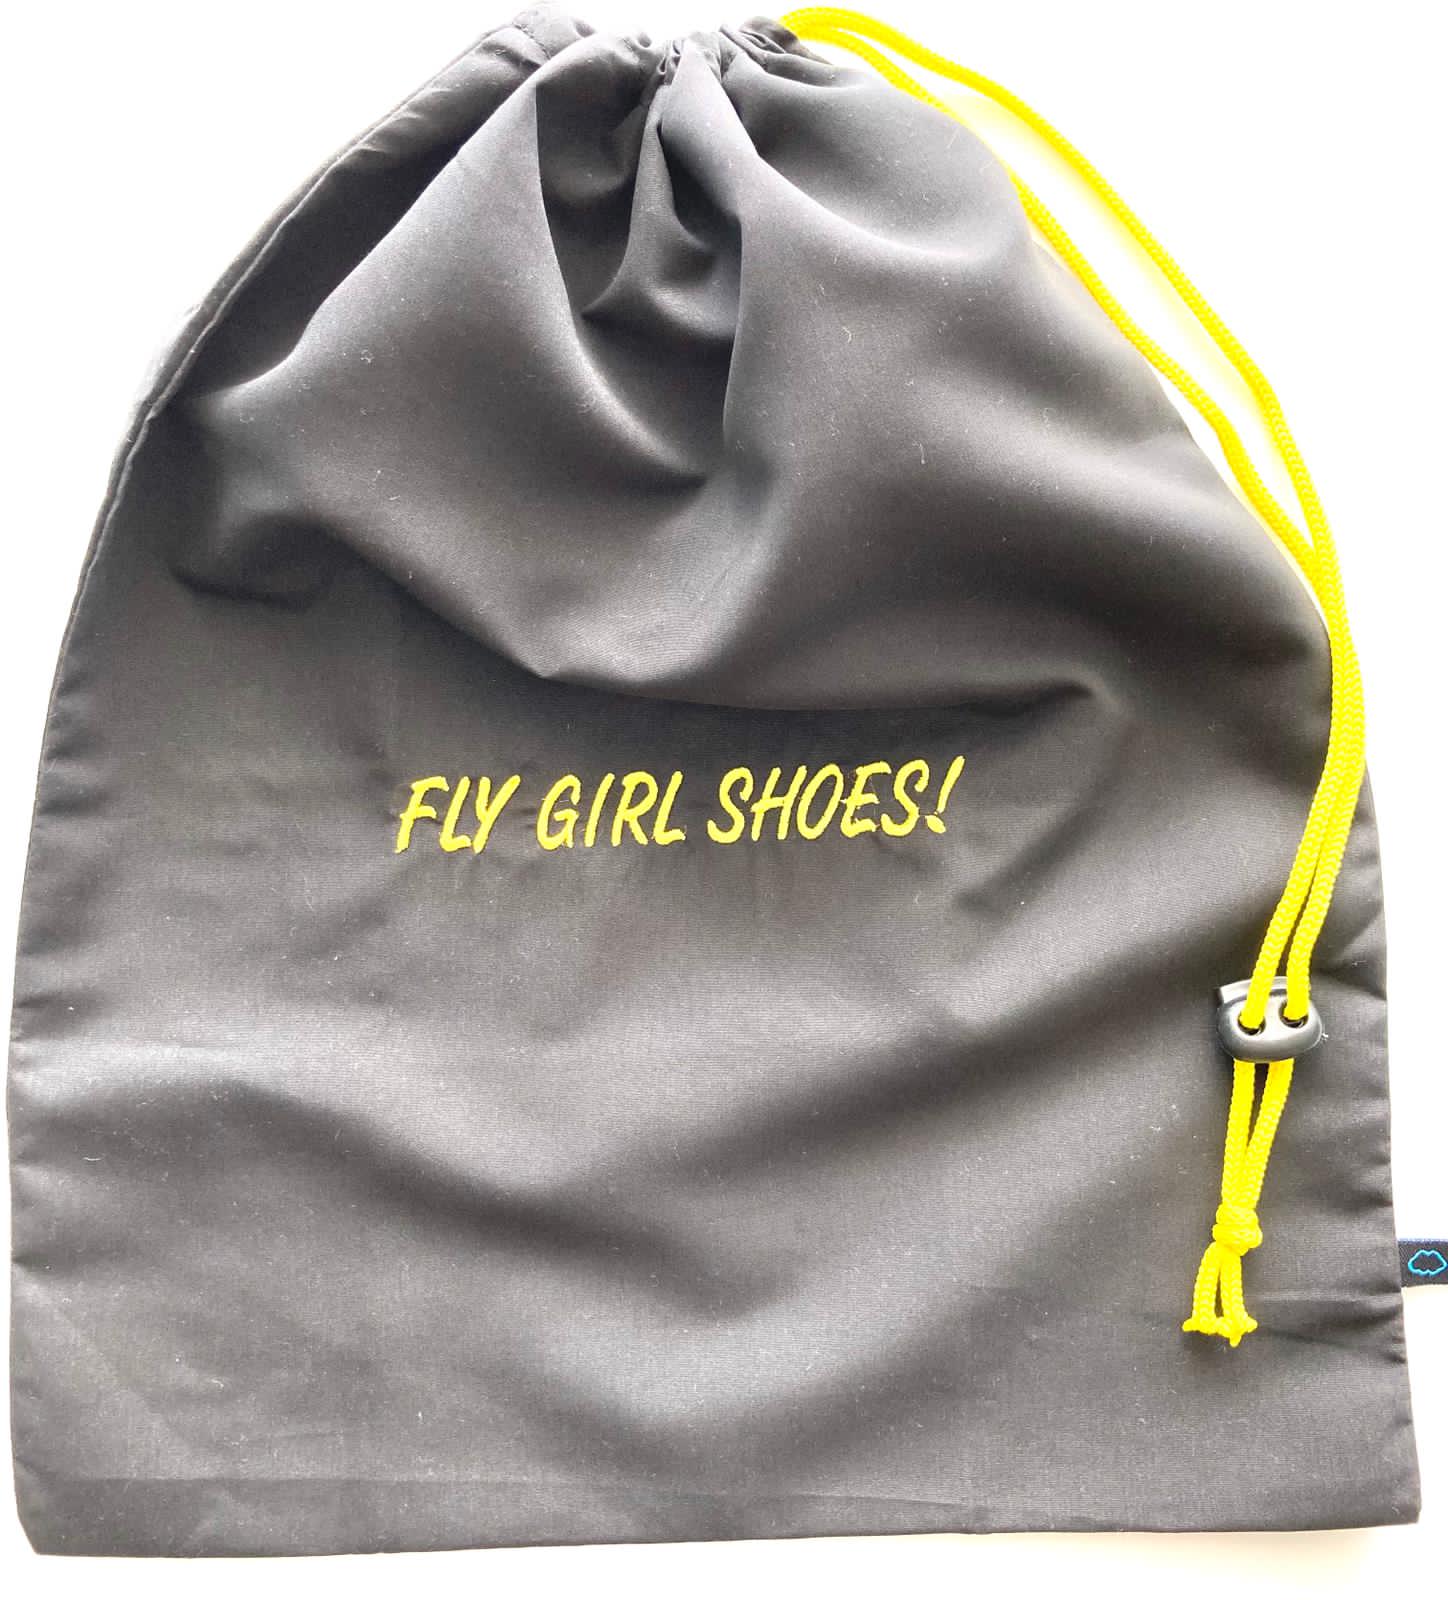 Fly girl shoes black bag